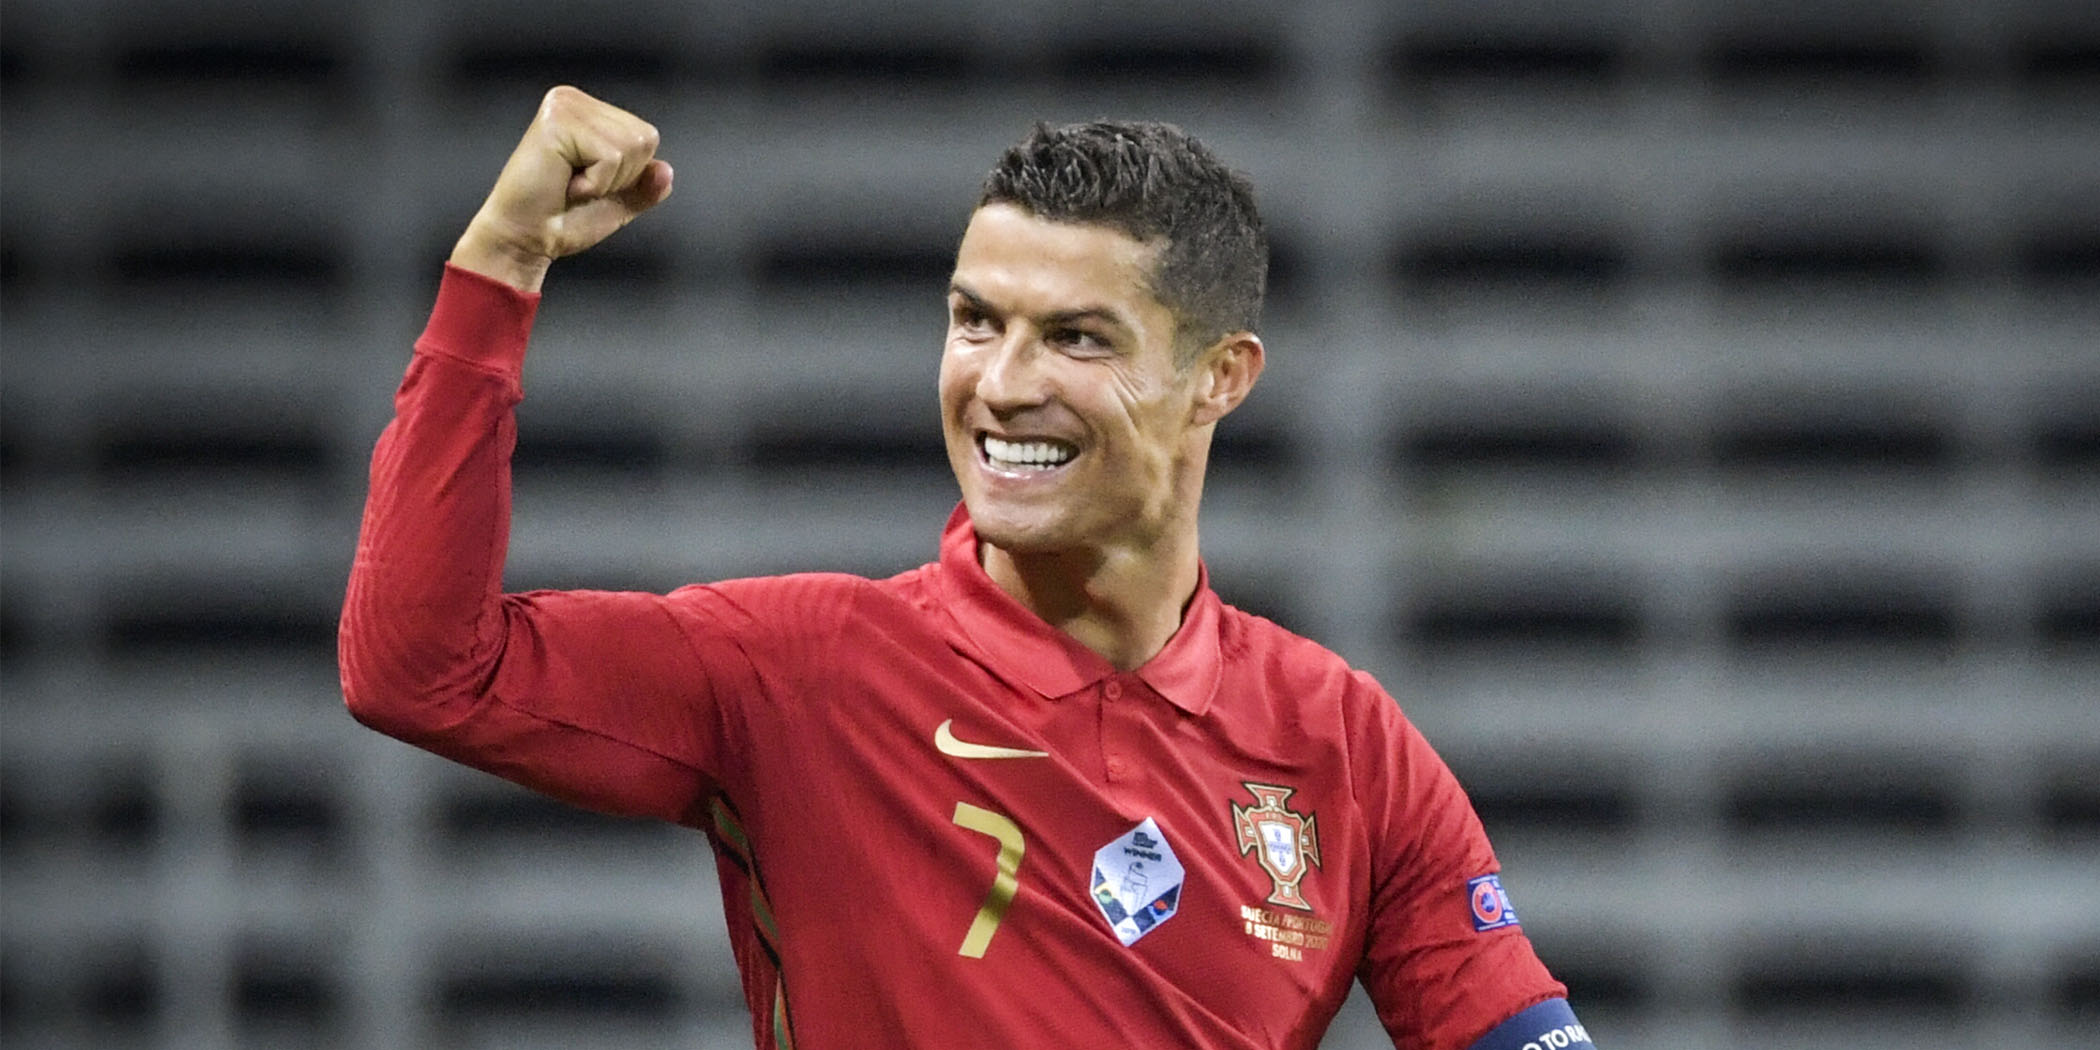 A Sporting a legesélyesebb Cristiano Ronaldo megszerzésére